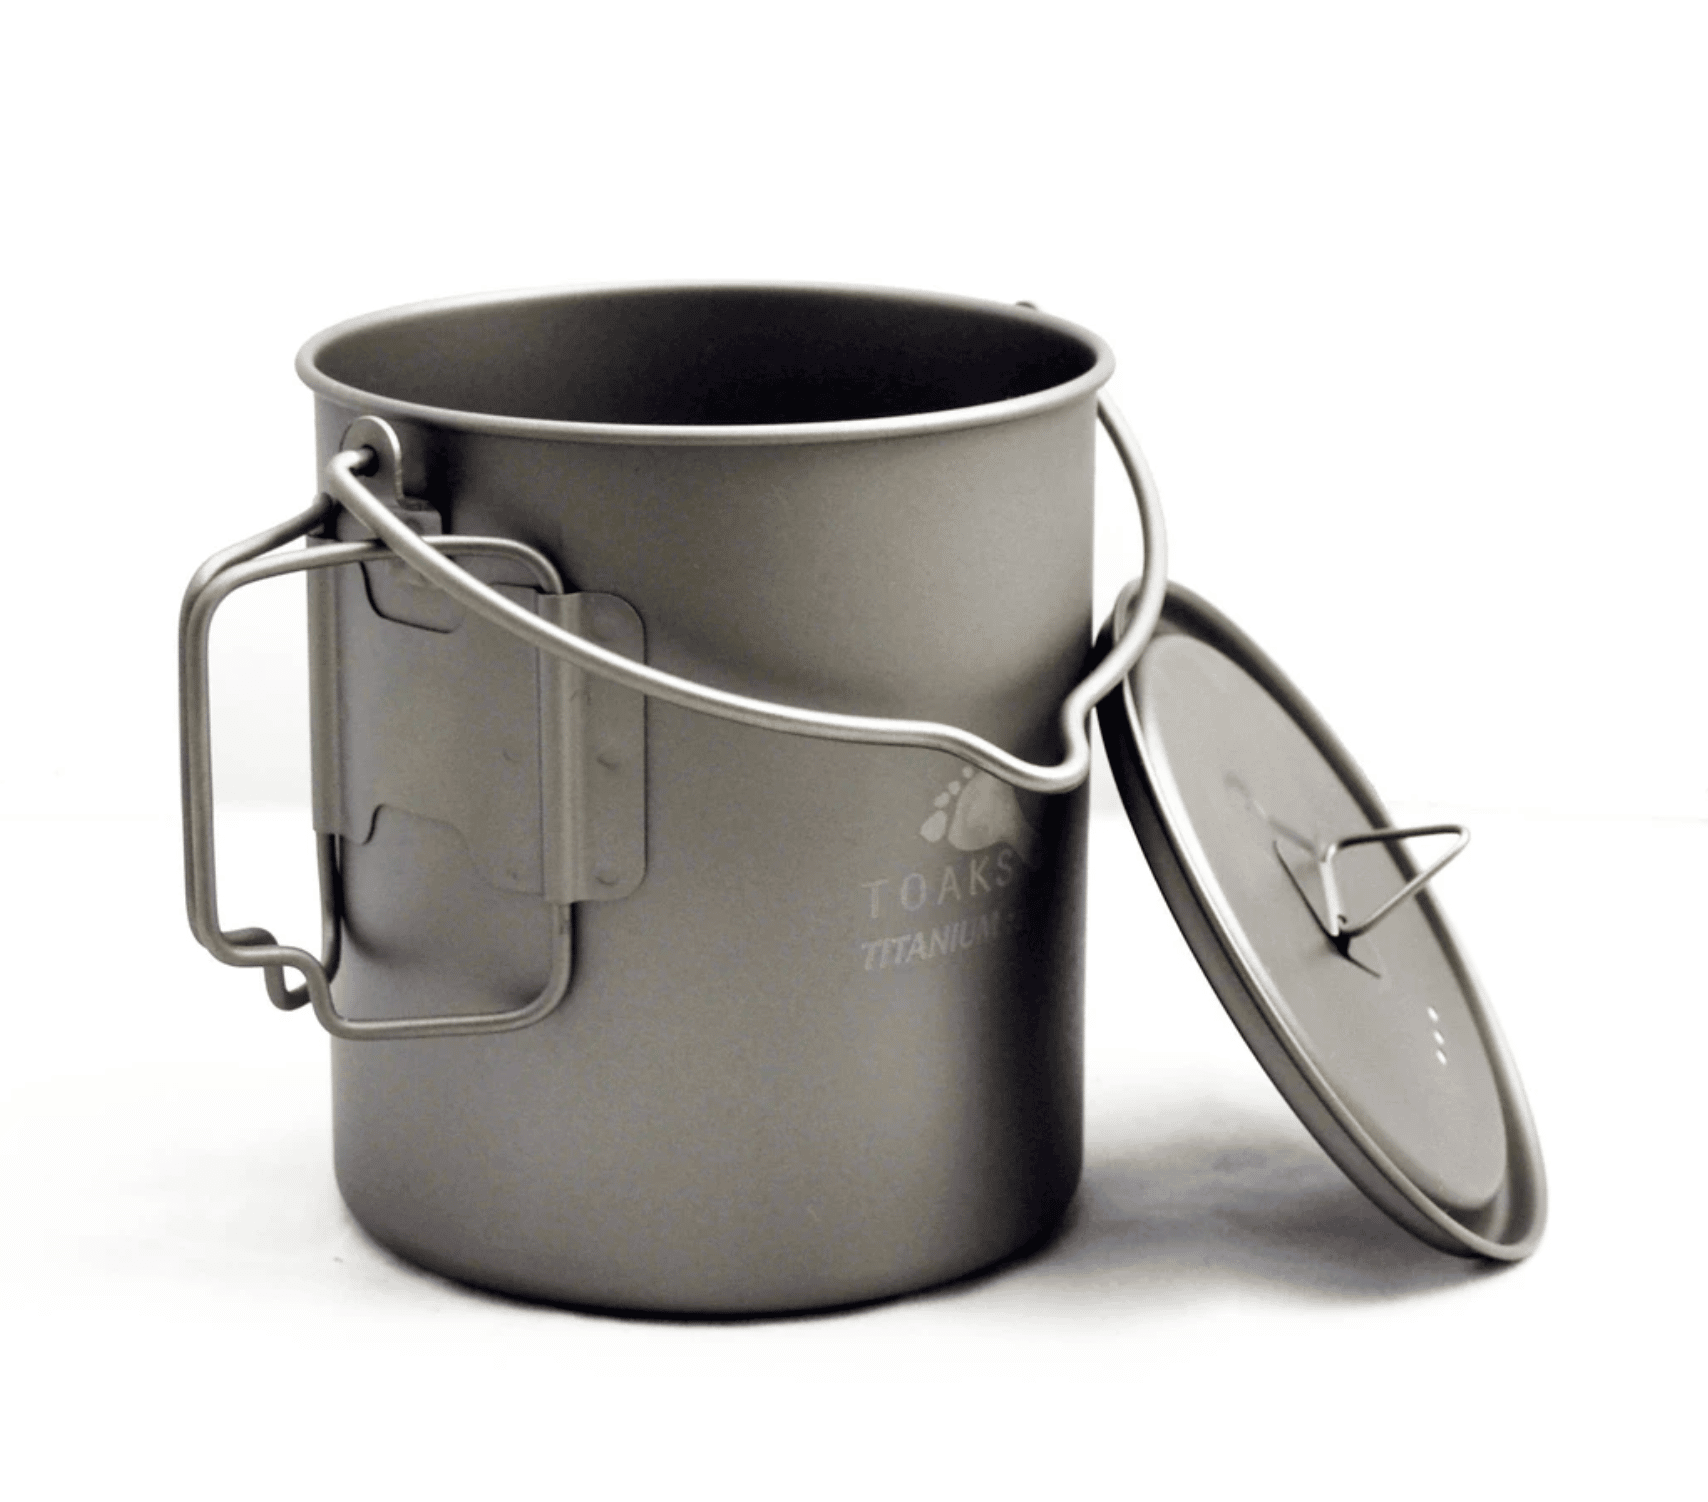 best backpacking cookware - titanium pot